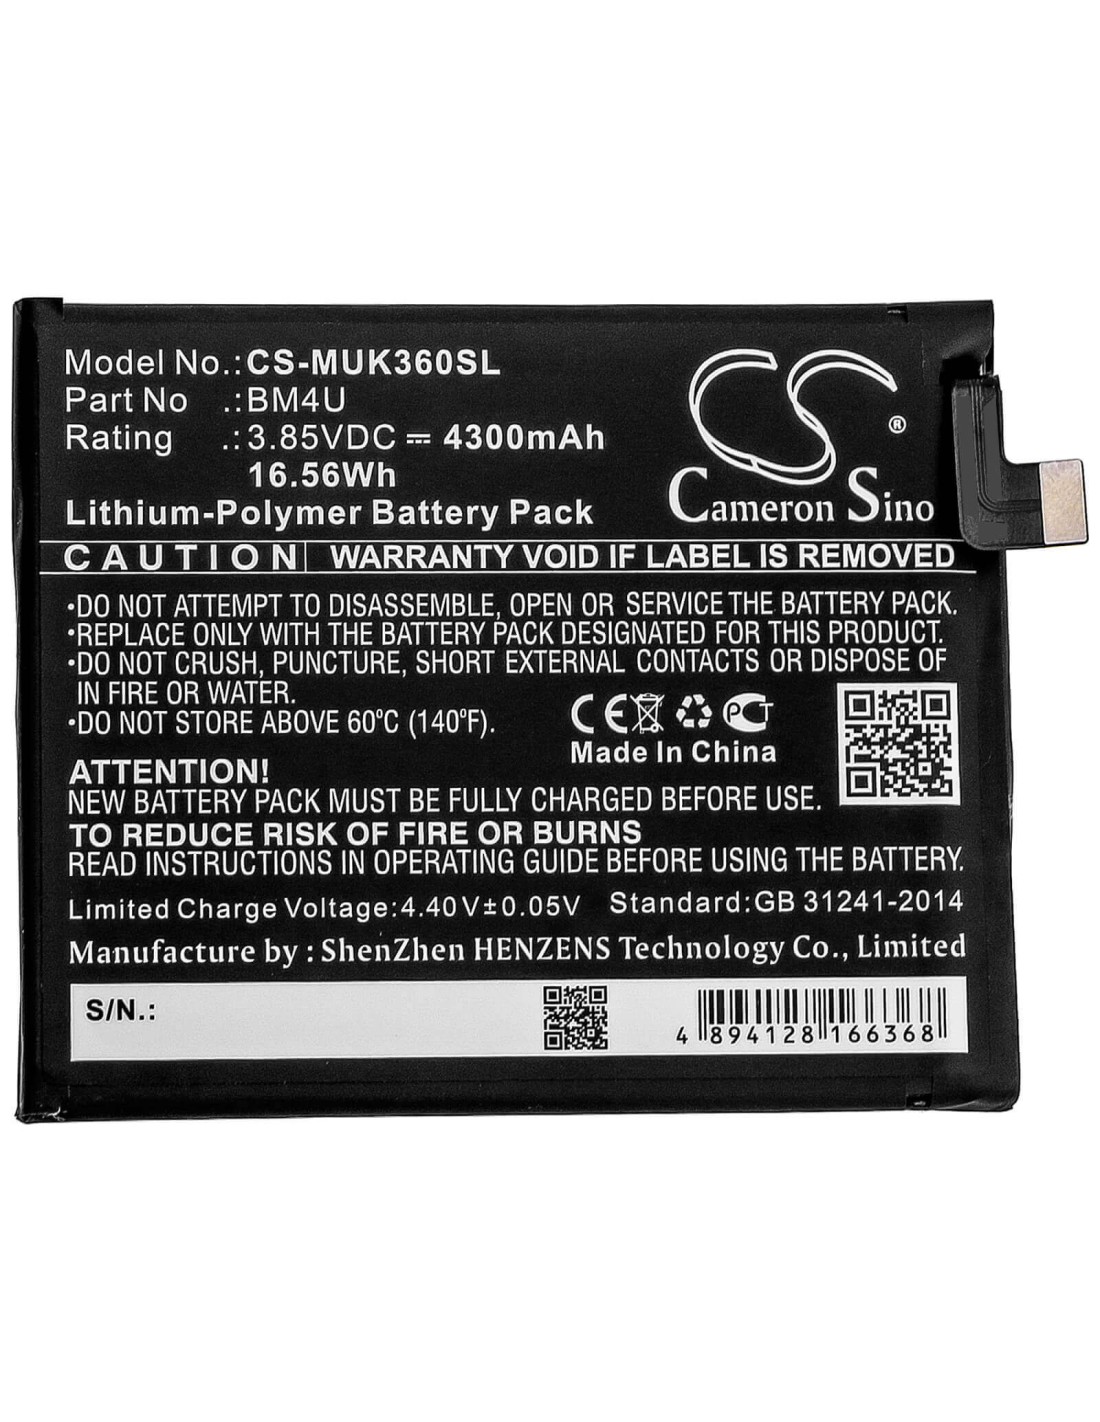 Battery for Redmi, K30 Ultra 5g, M2006j10c 3.85V, 4300mAh - 16.56Wh